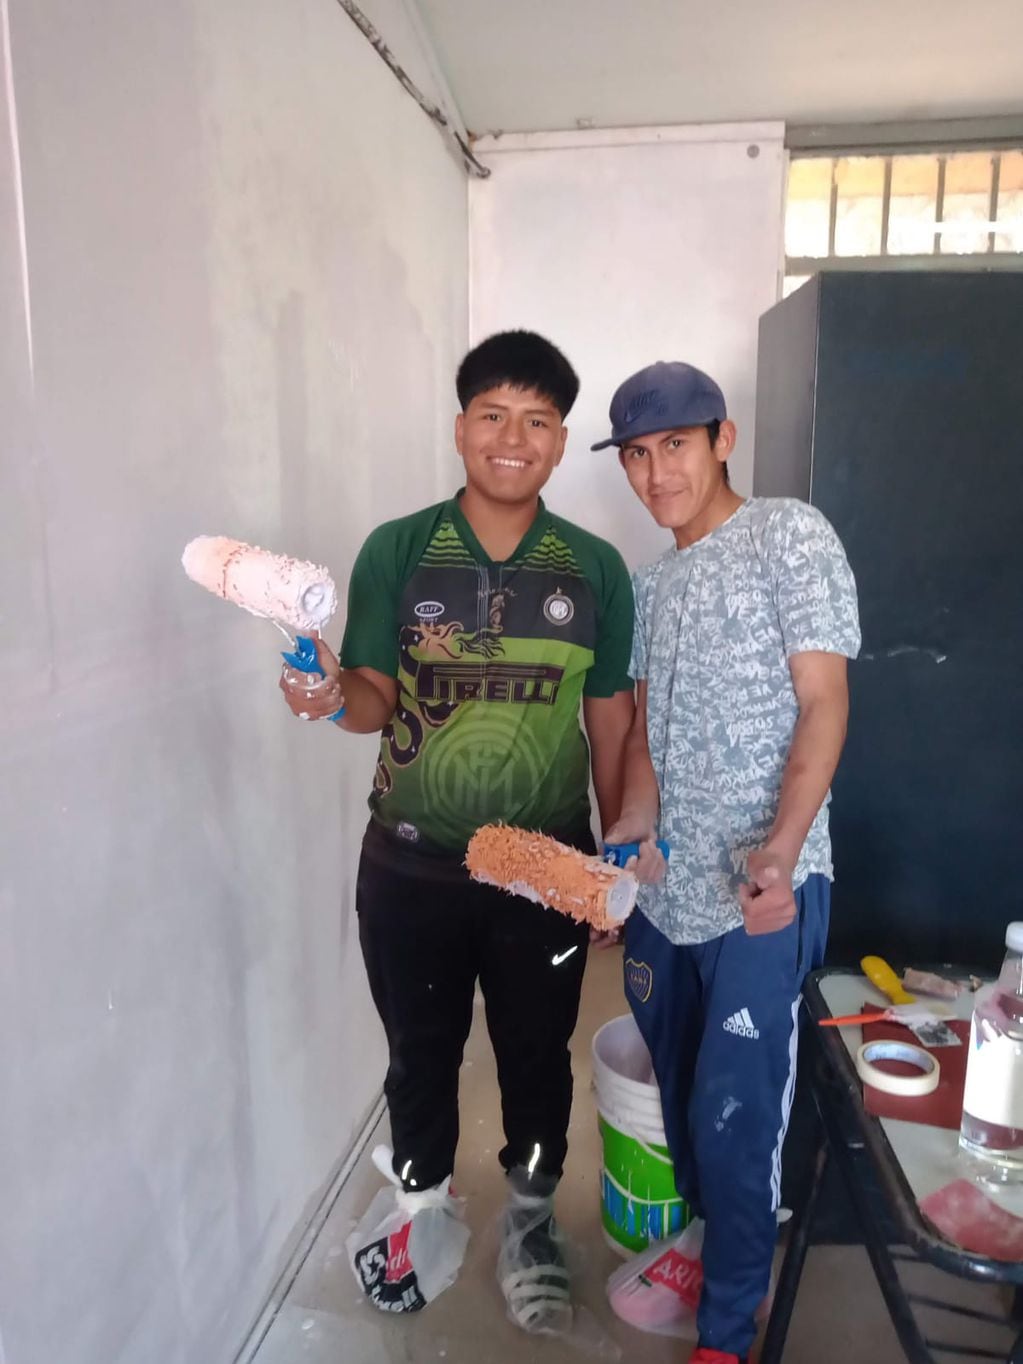 Dos alumnos posan para la foto mientras pintan su escuela.